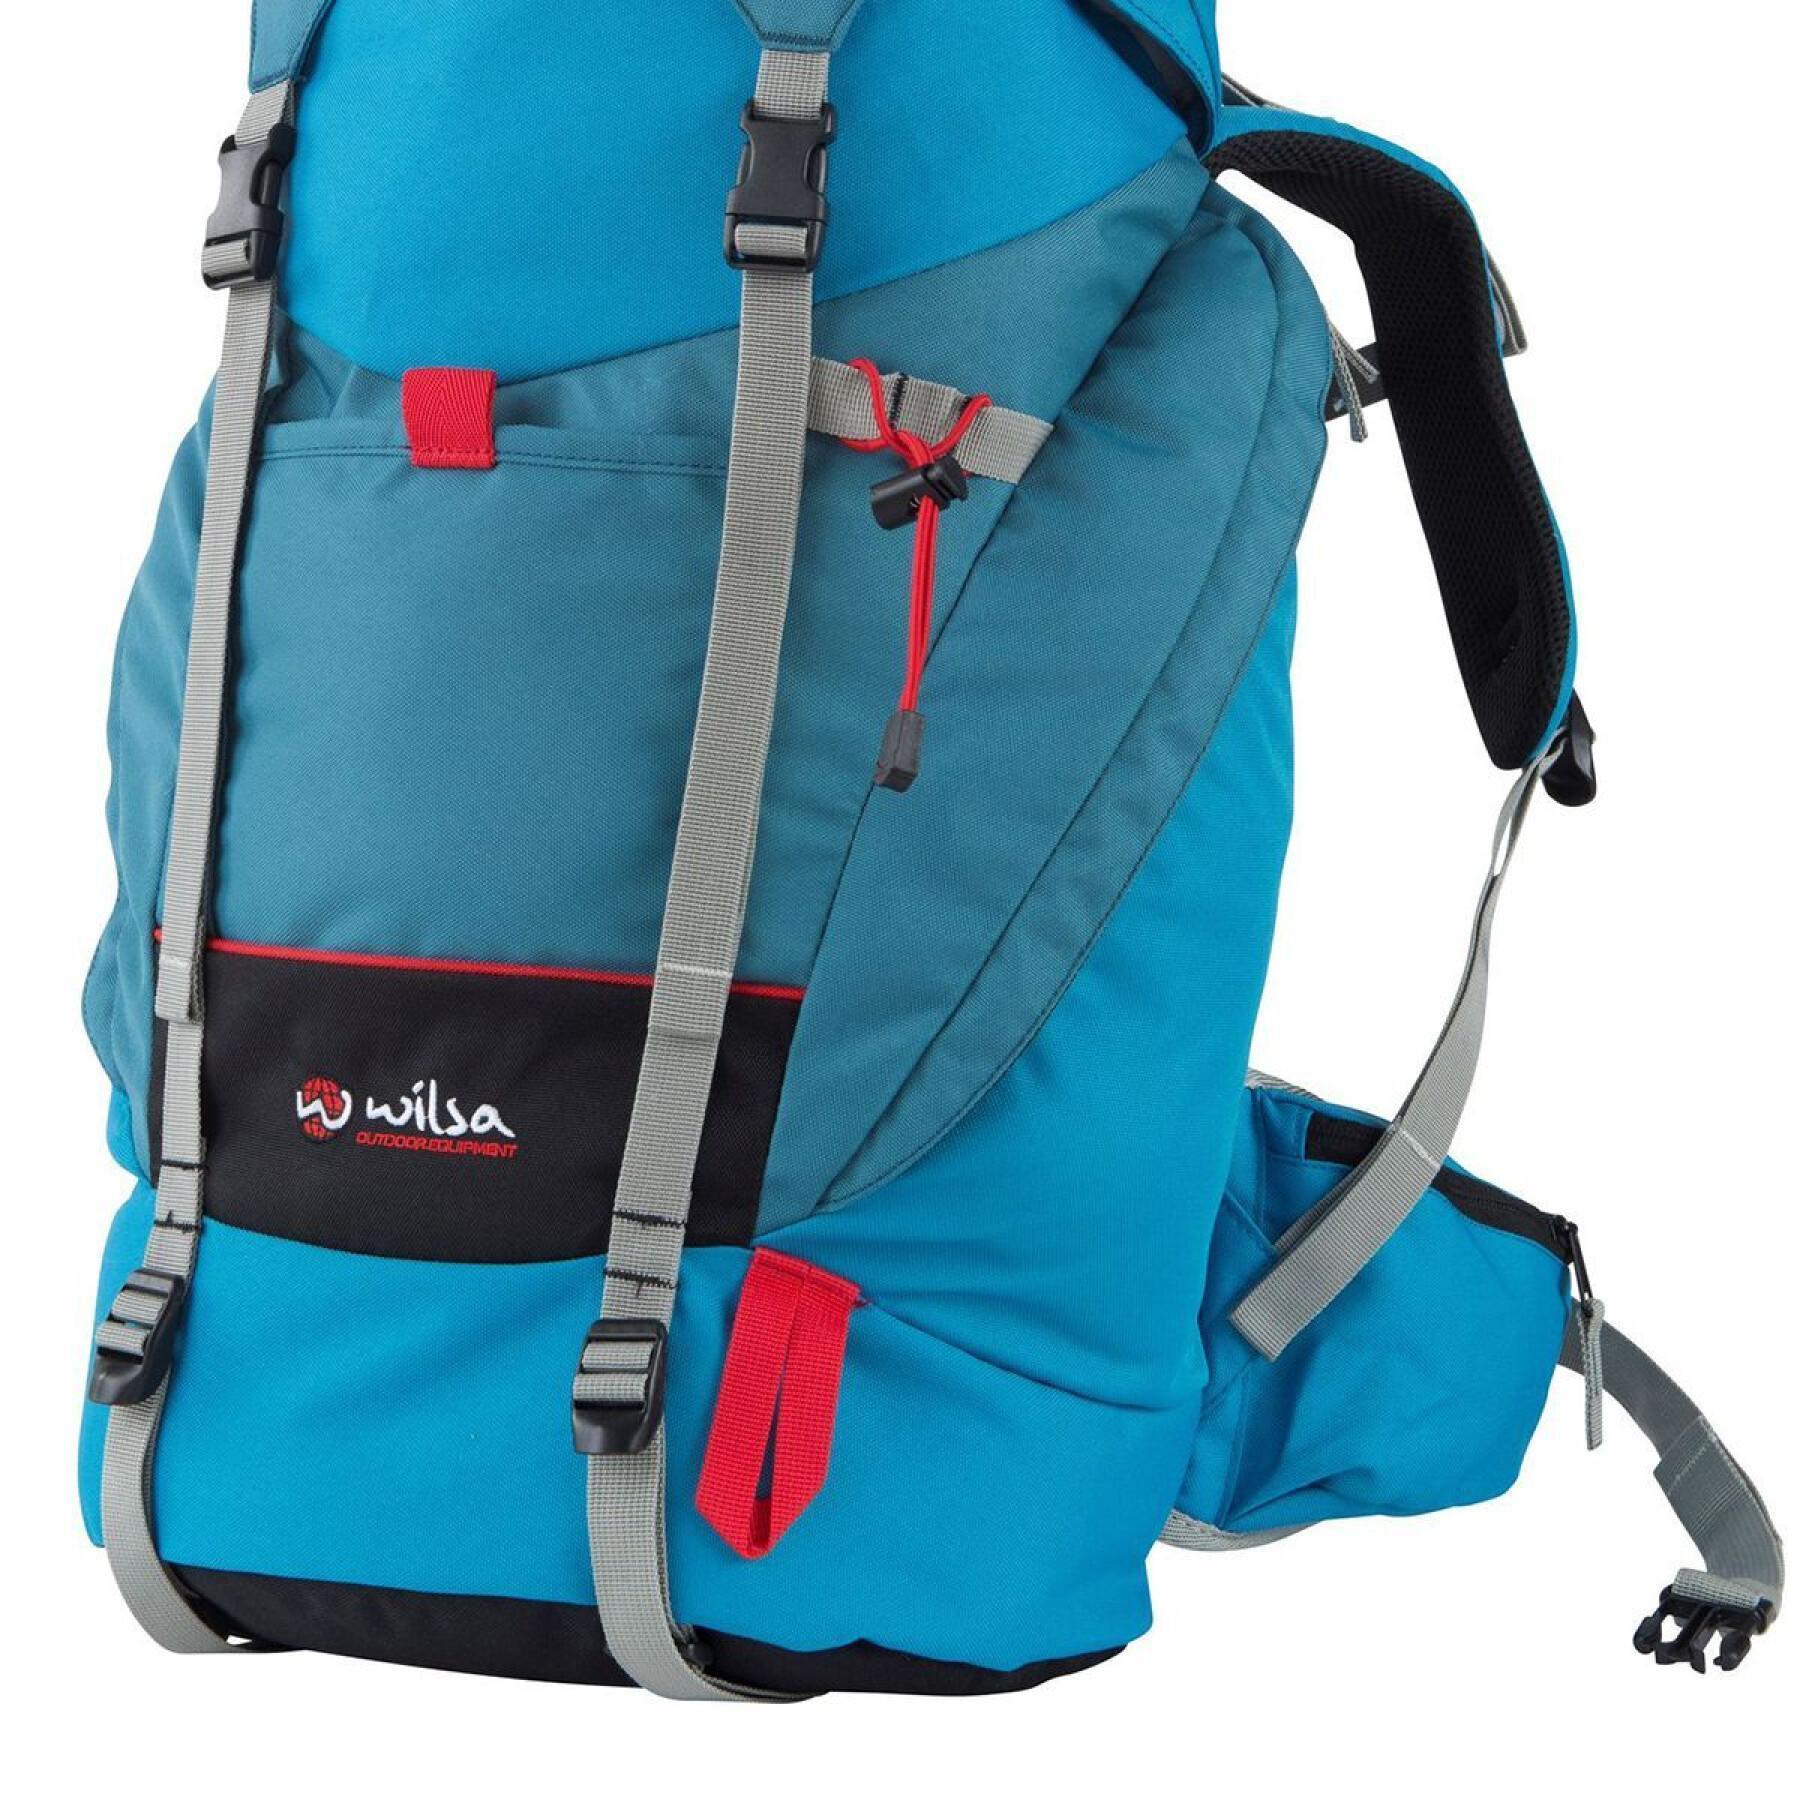 Backpack Wilsa Outdoor Aspen 40 L